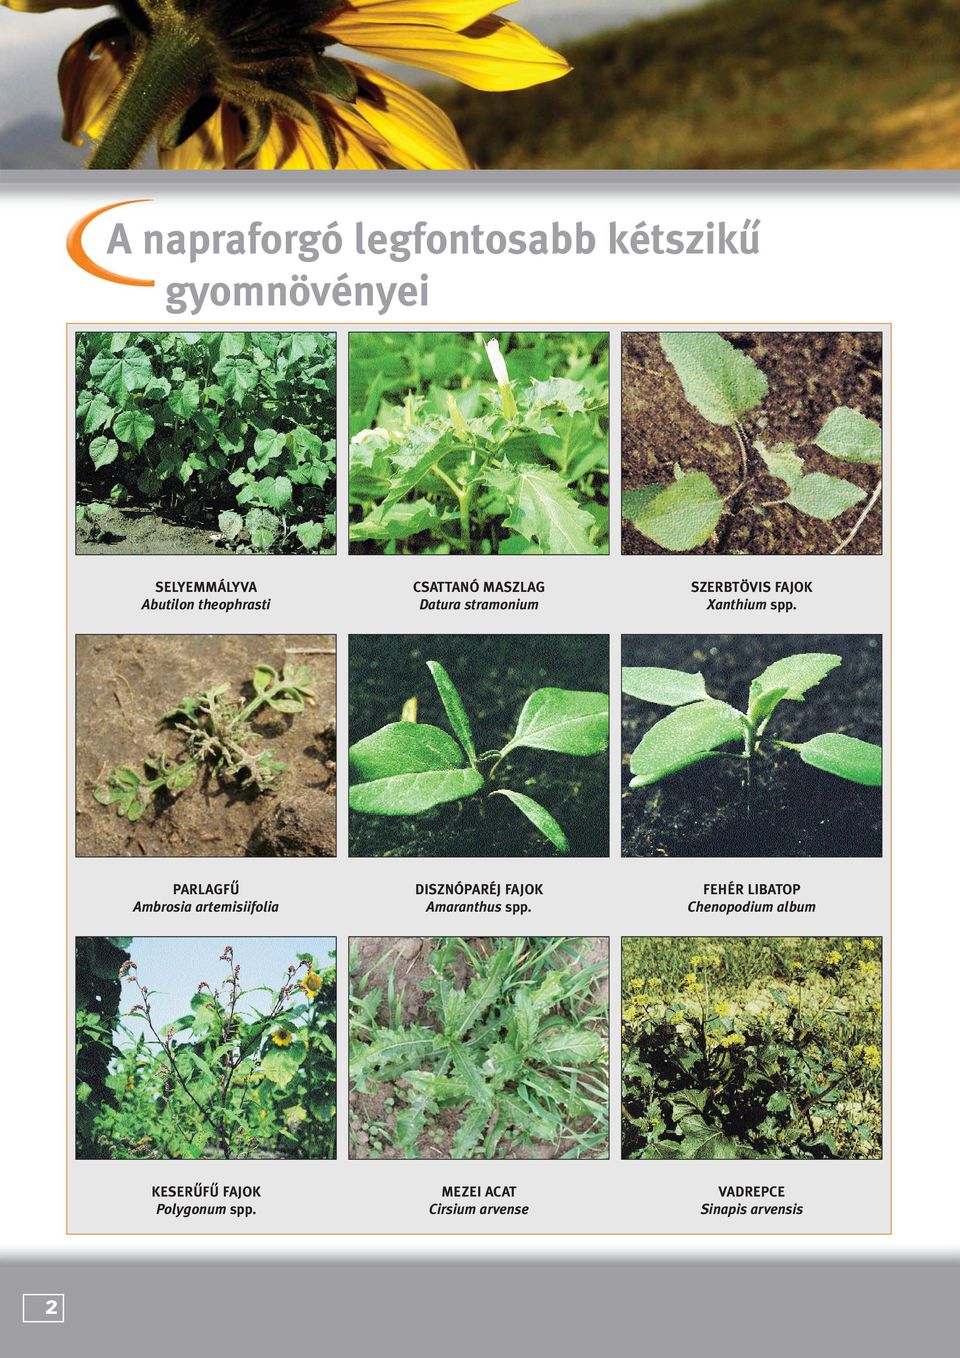 PARLAGFÛ Ambrosia artemisiifolia DISZNÓPARÉJ FAJOK Amaranthus spp.